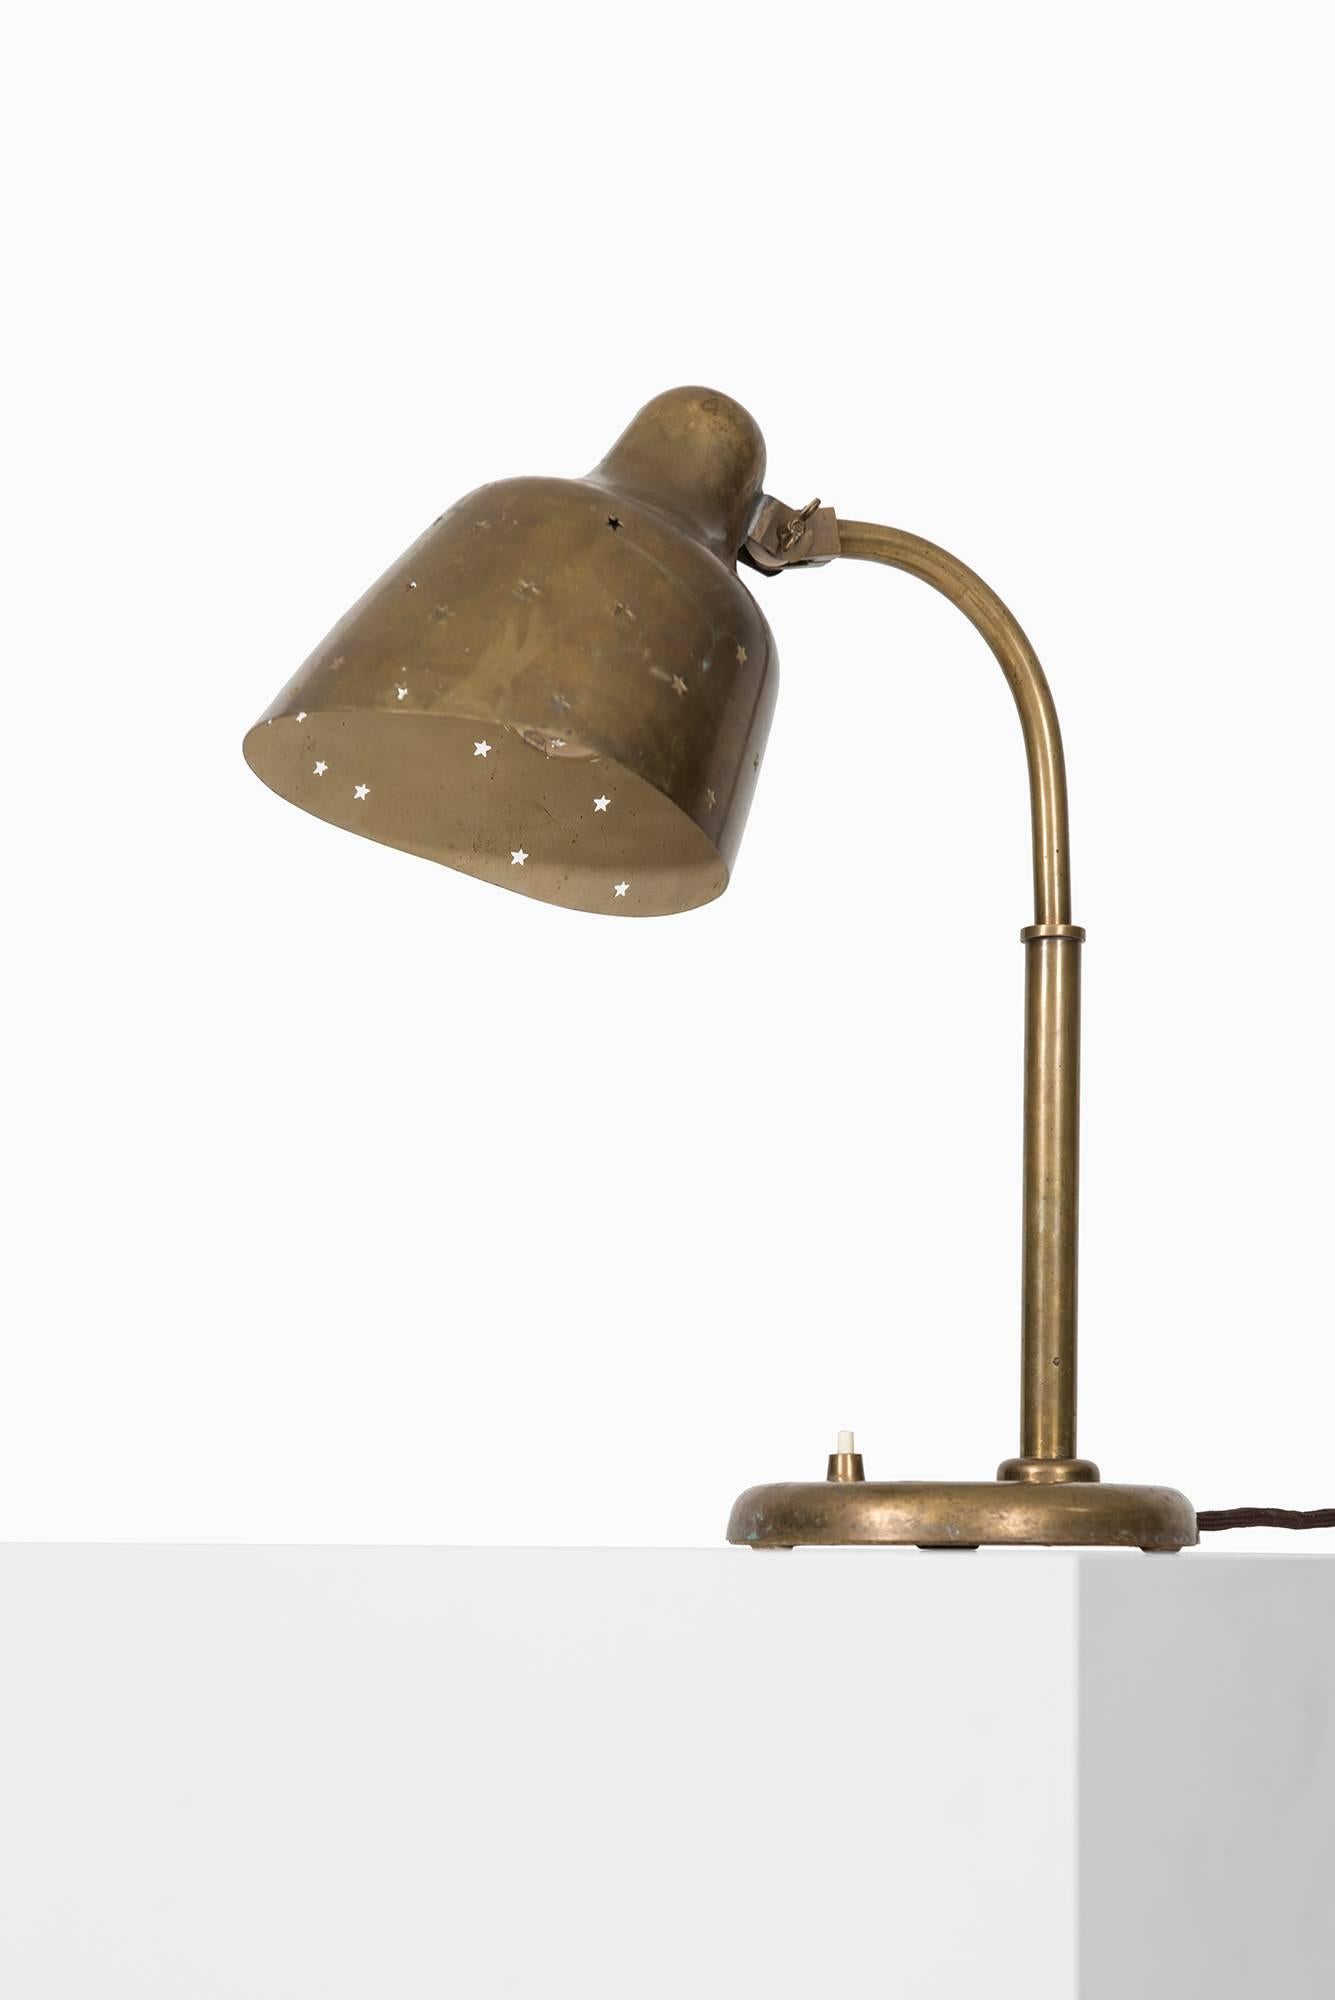 Seltene Tischlampe, die Vilhelm Lauritzen zugeschrieben wird. Produziert in Dänemark.